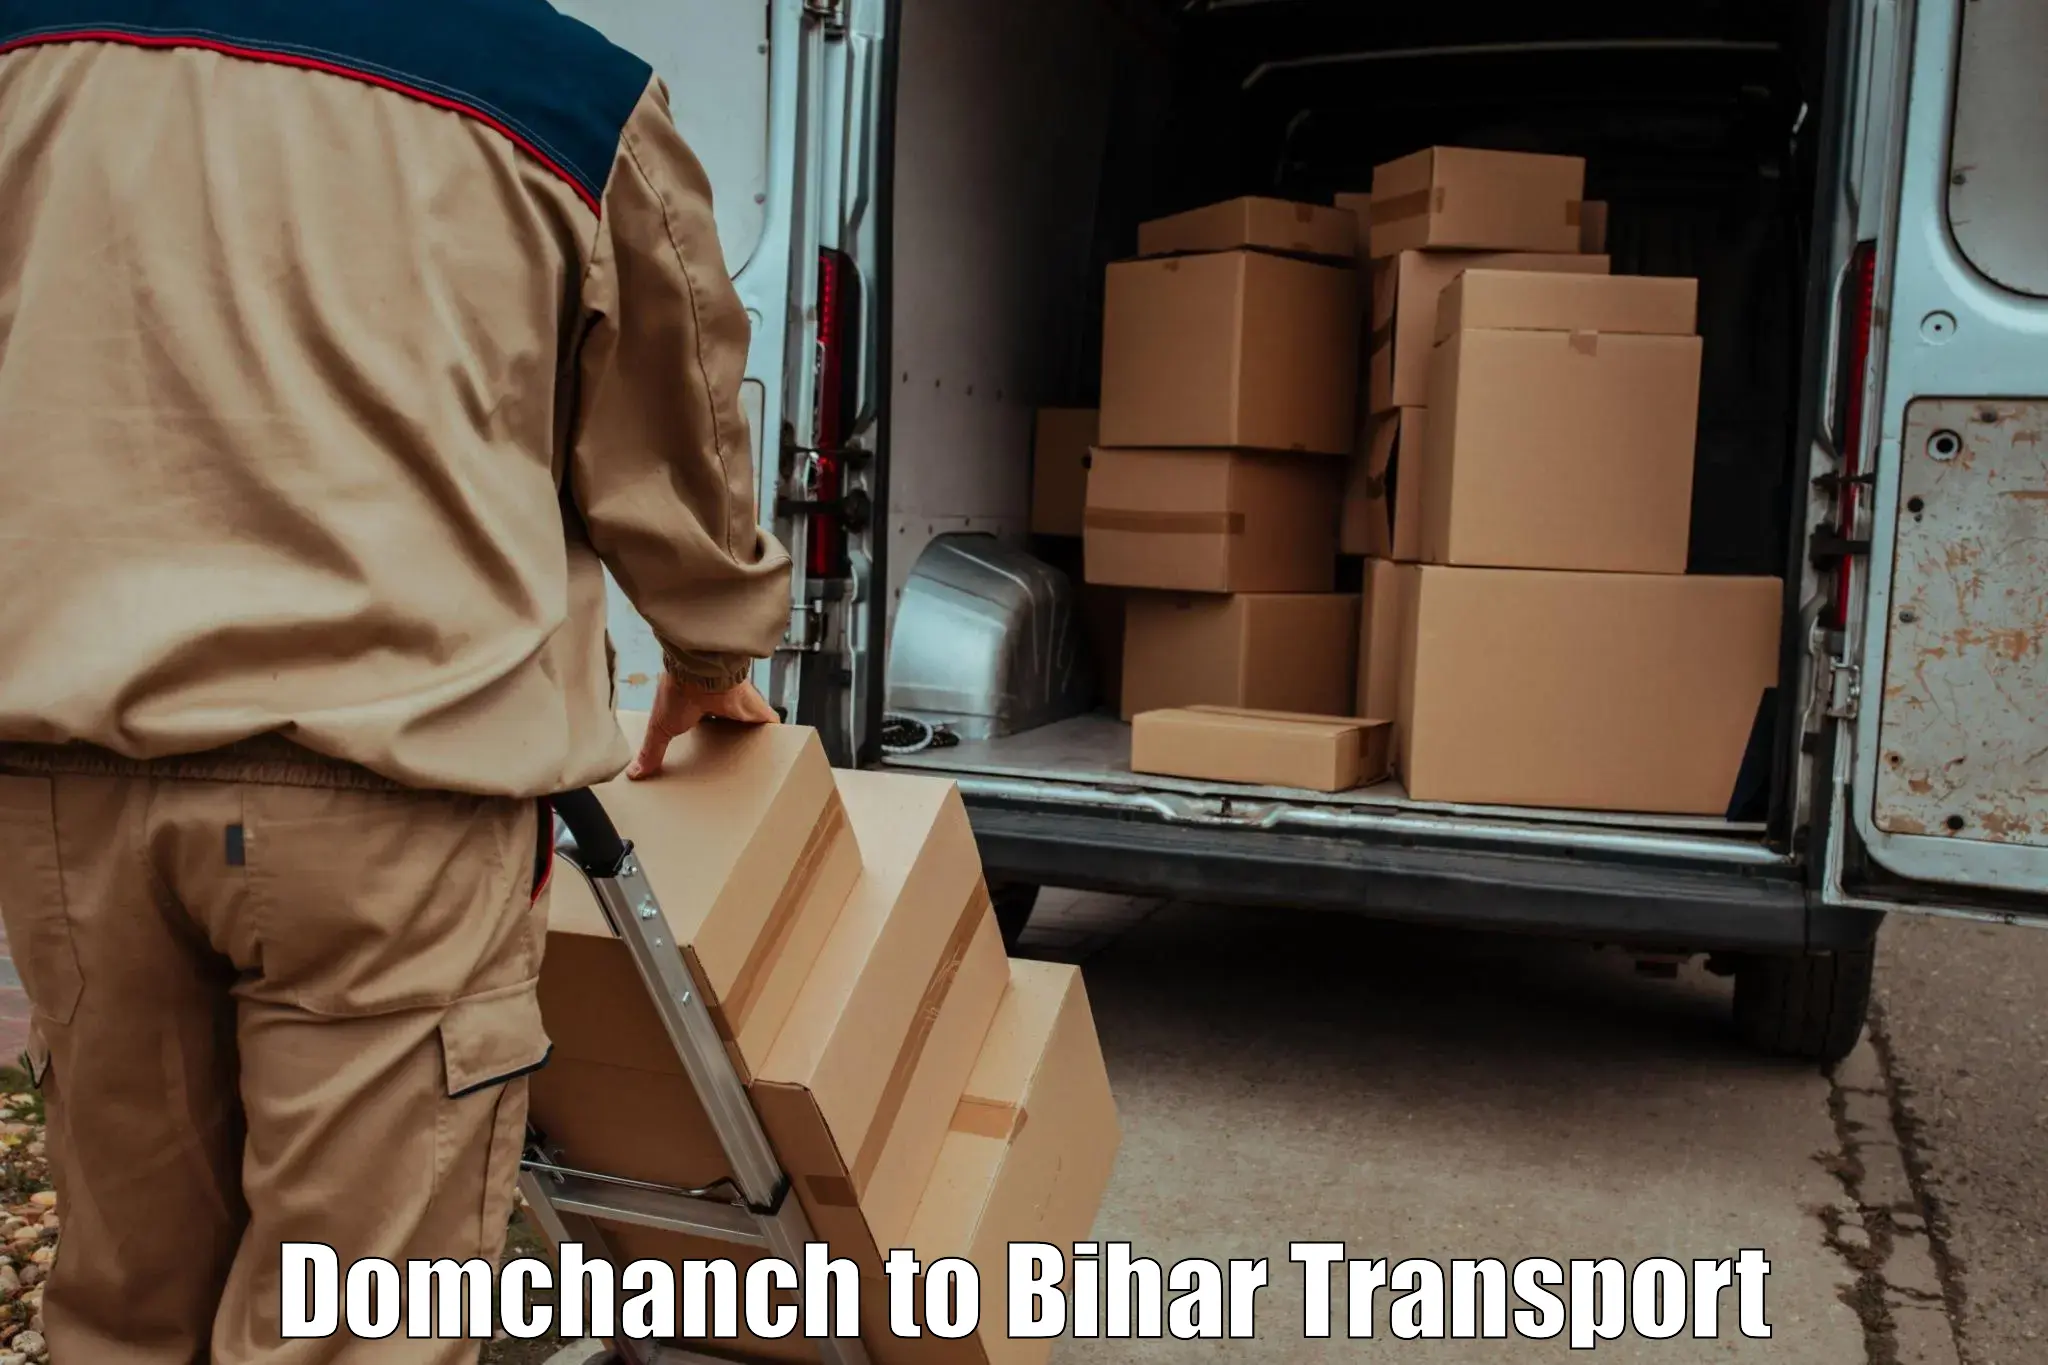 Interstate goods transport Domchanch to Bihar